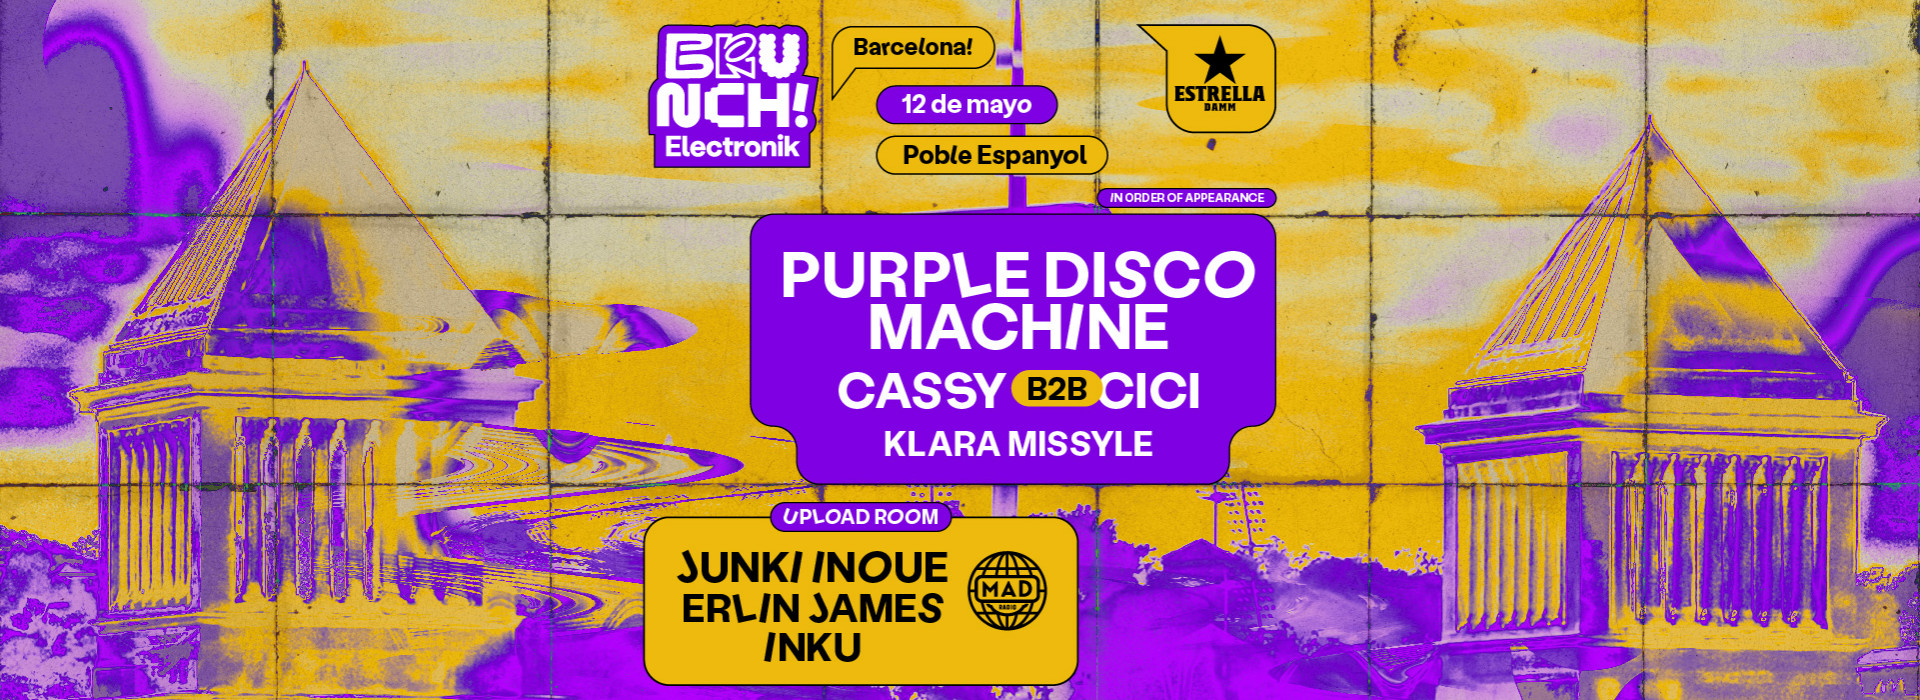 Brunch Electronik #7 Purple Disco Machine, Cassy b2b Cici, Klara Missyle y más